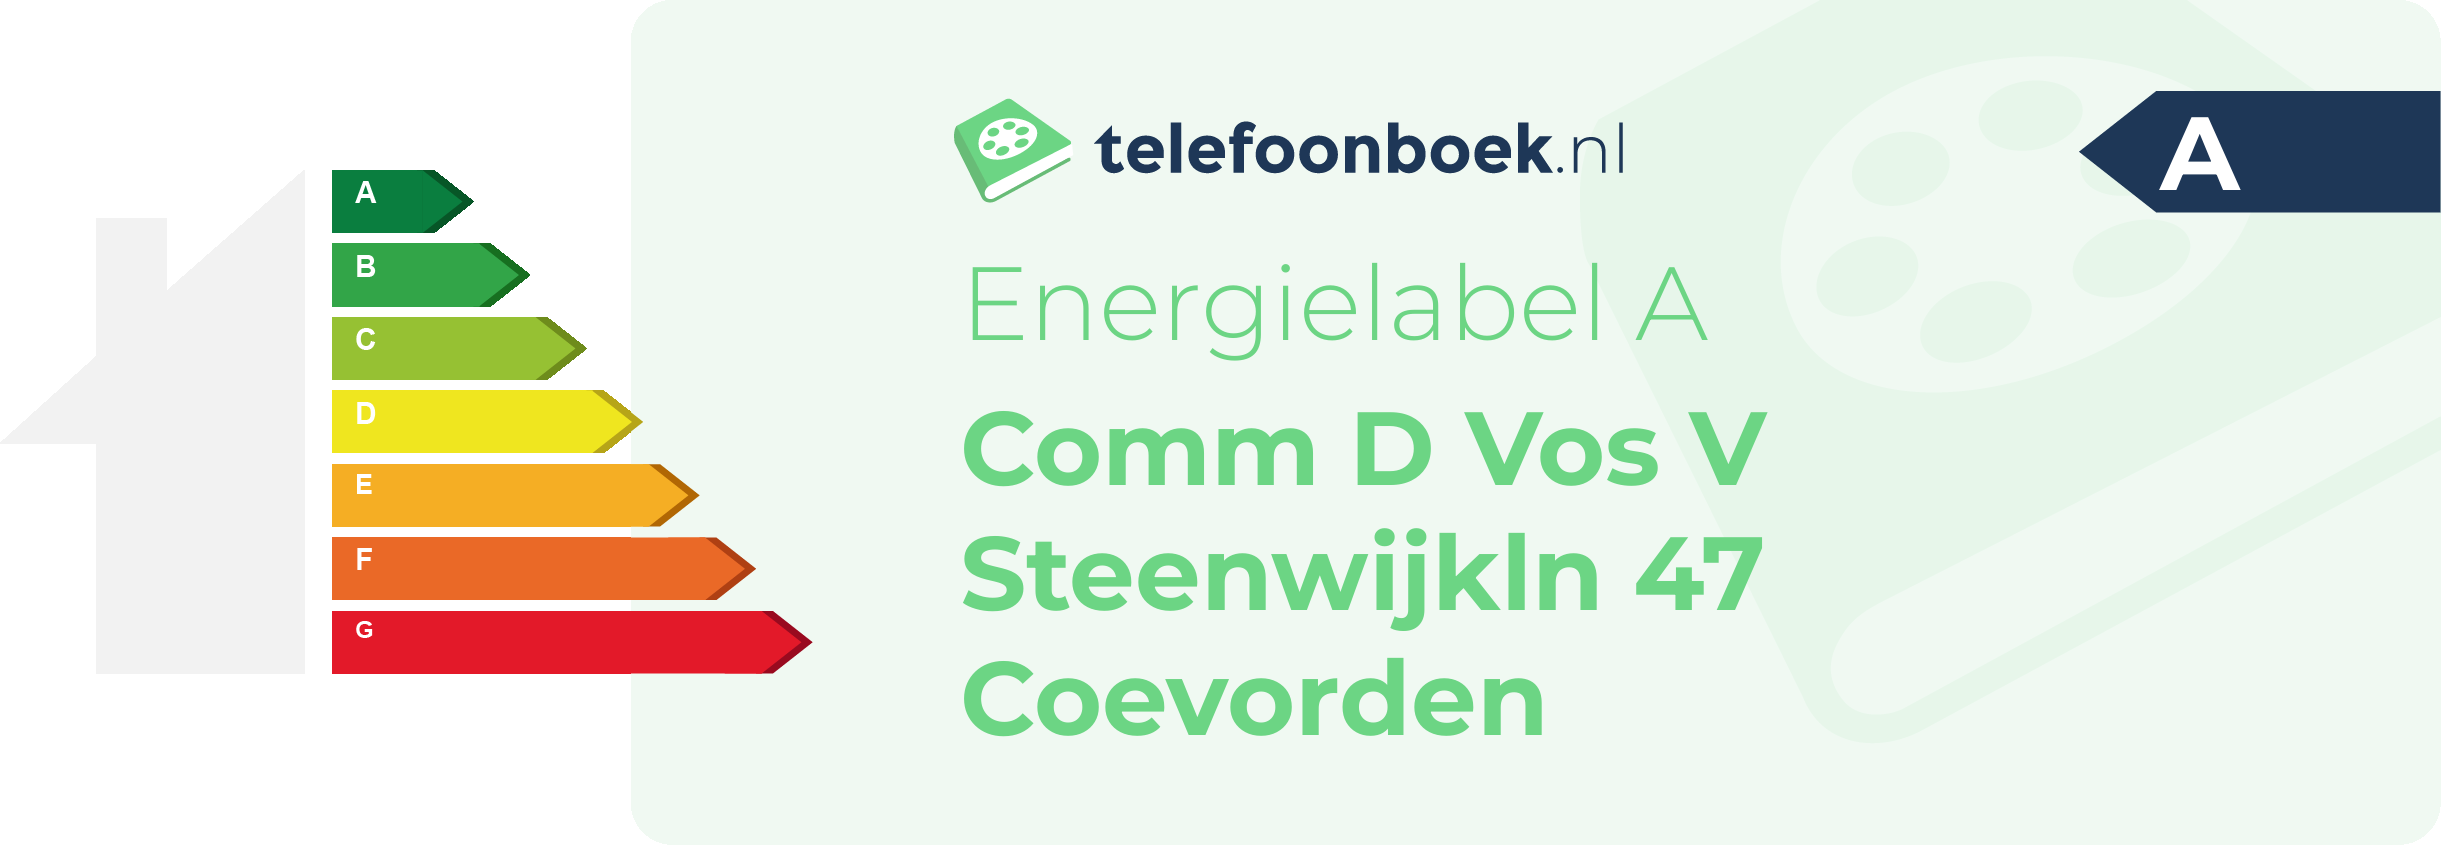 Energielabel Comm D Vos V Steenwijkln 47 Coevorden